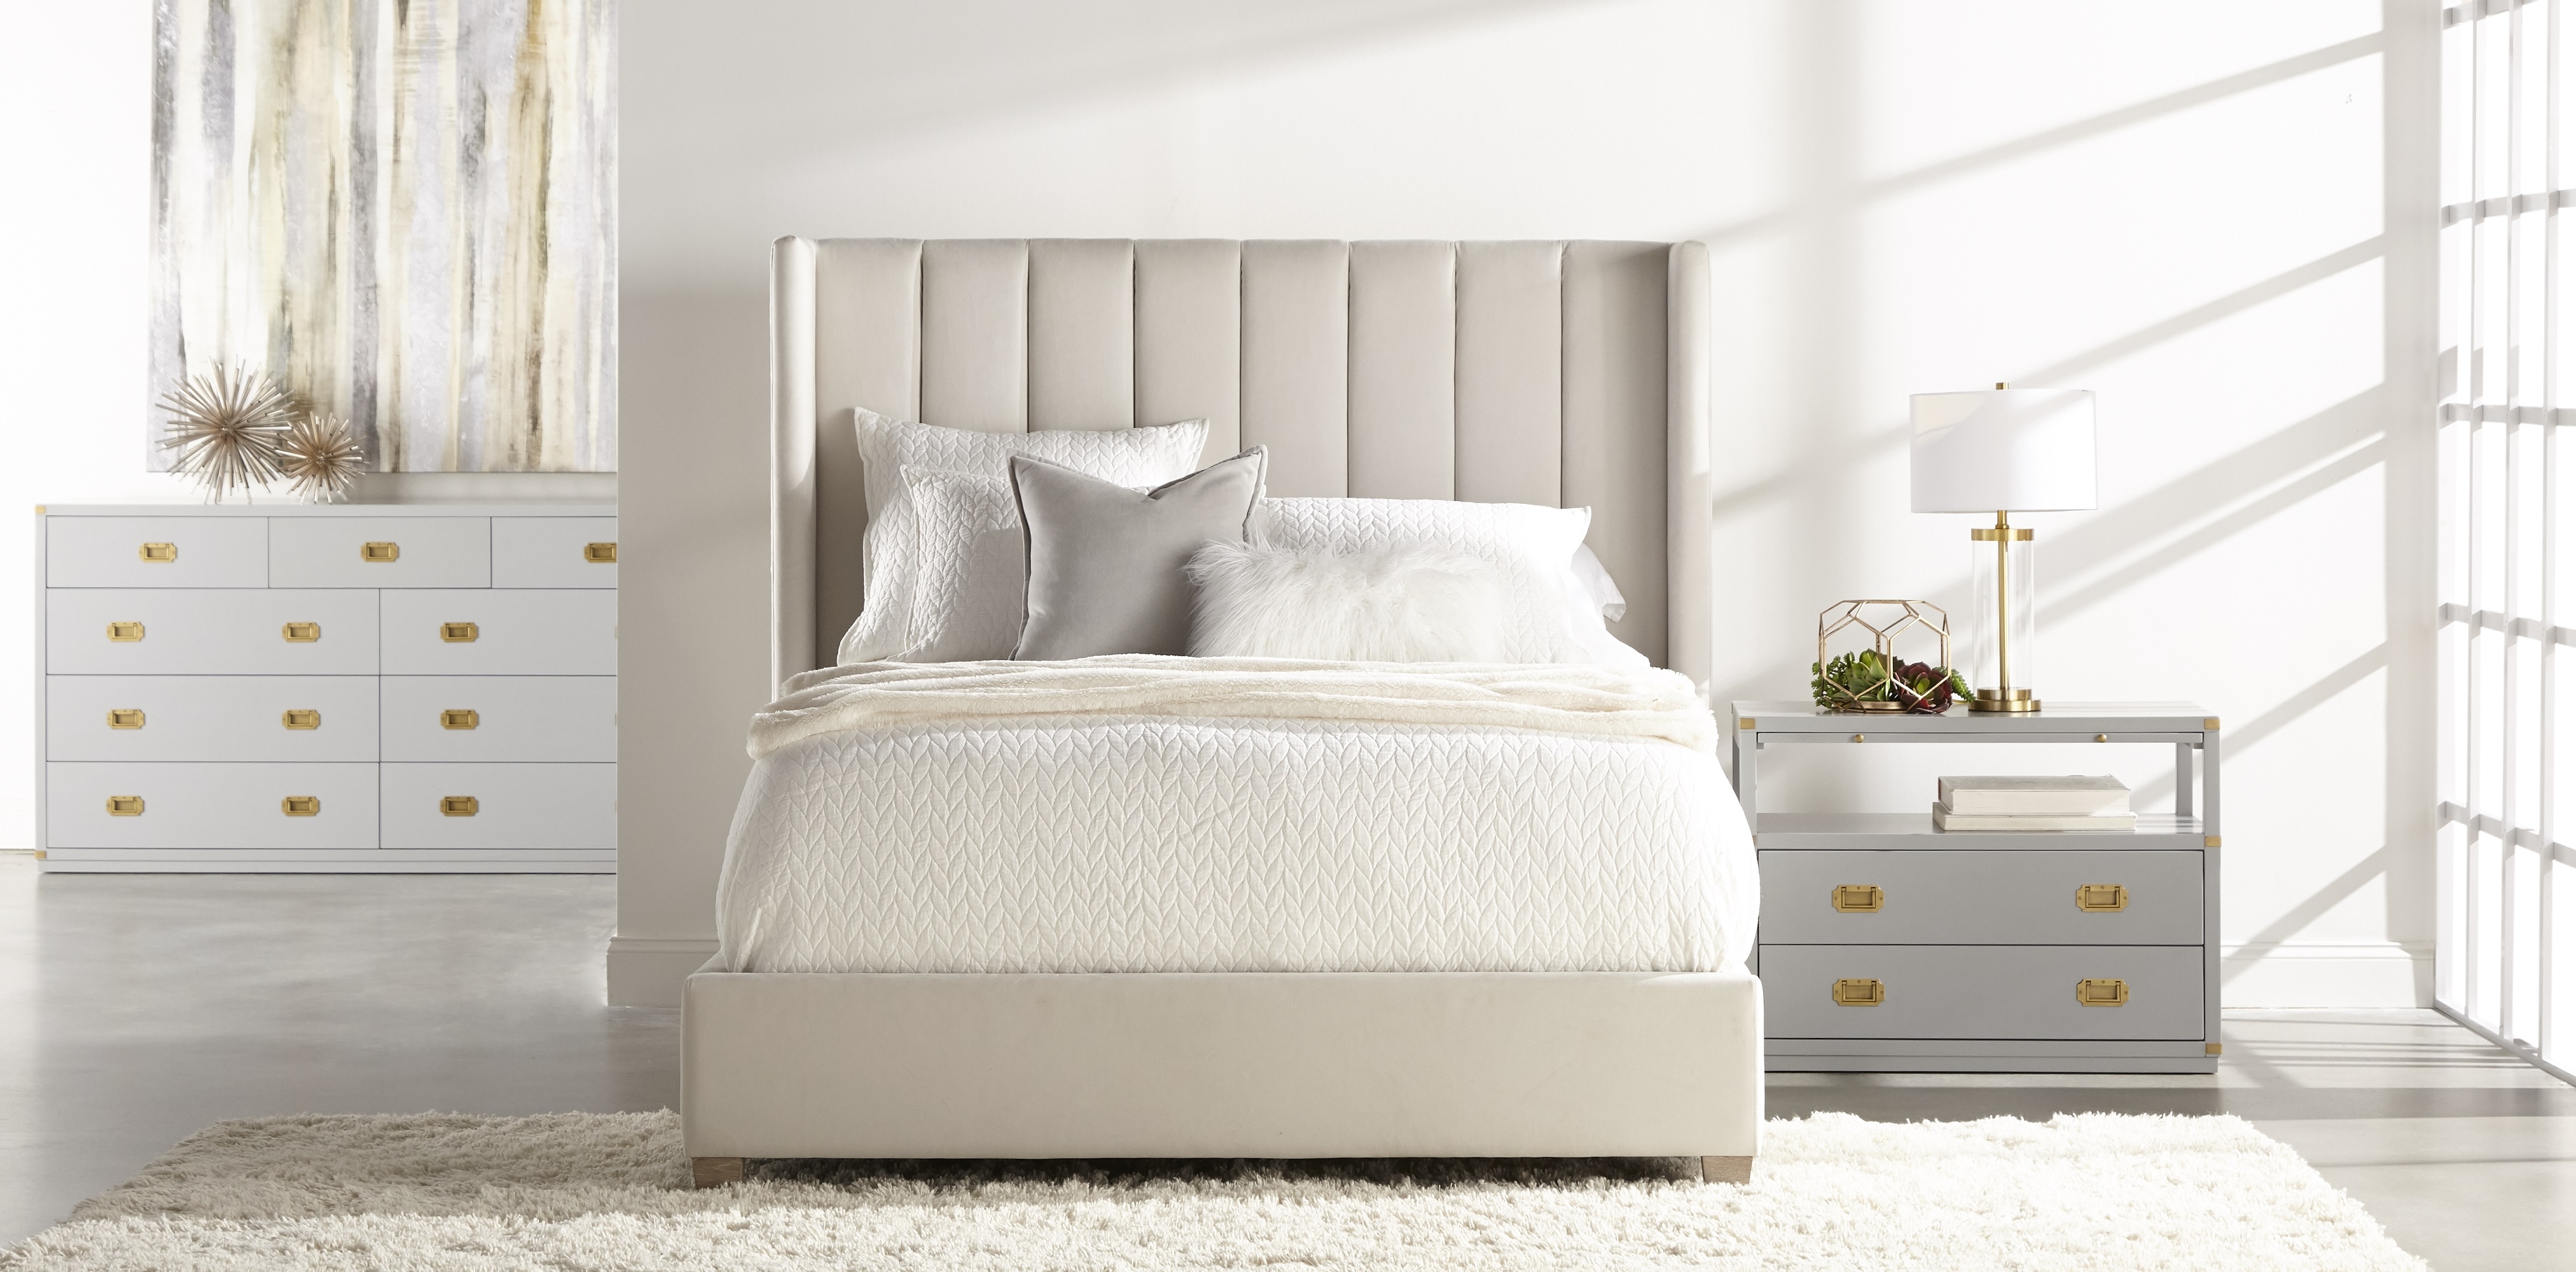 Chandler Bed, Cream, Queen - Image 3